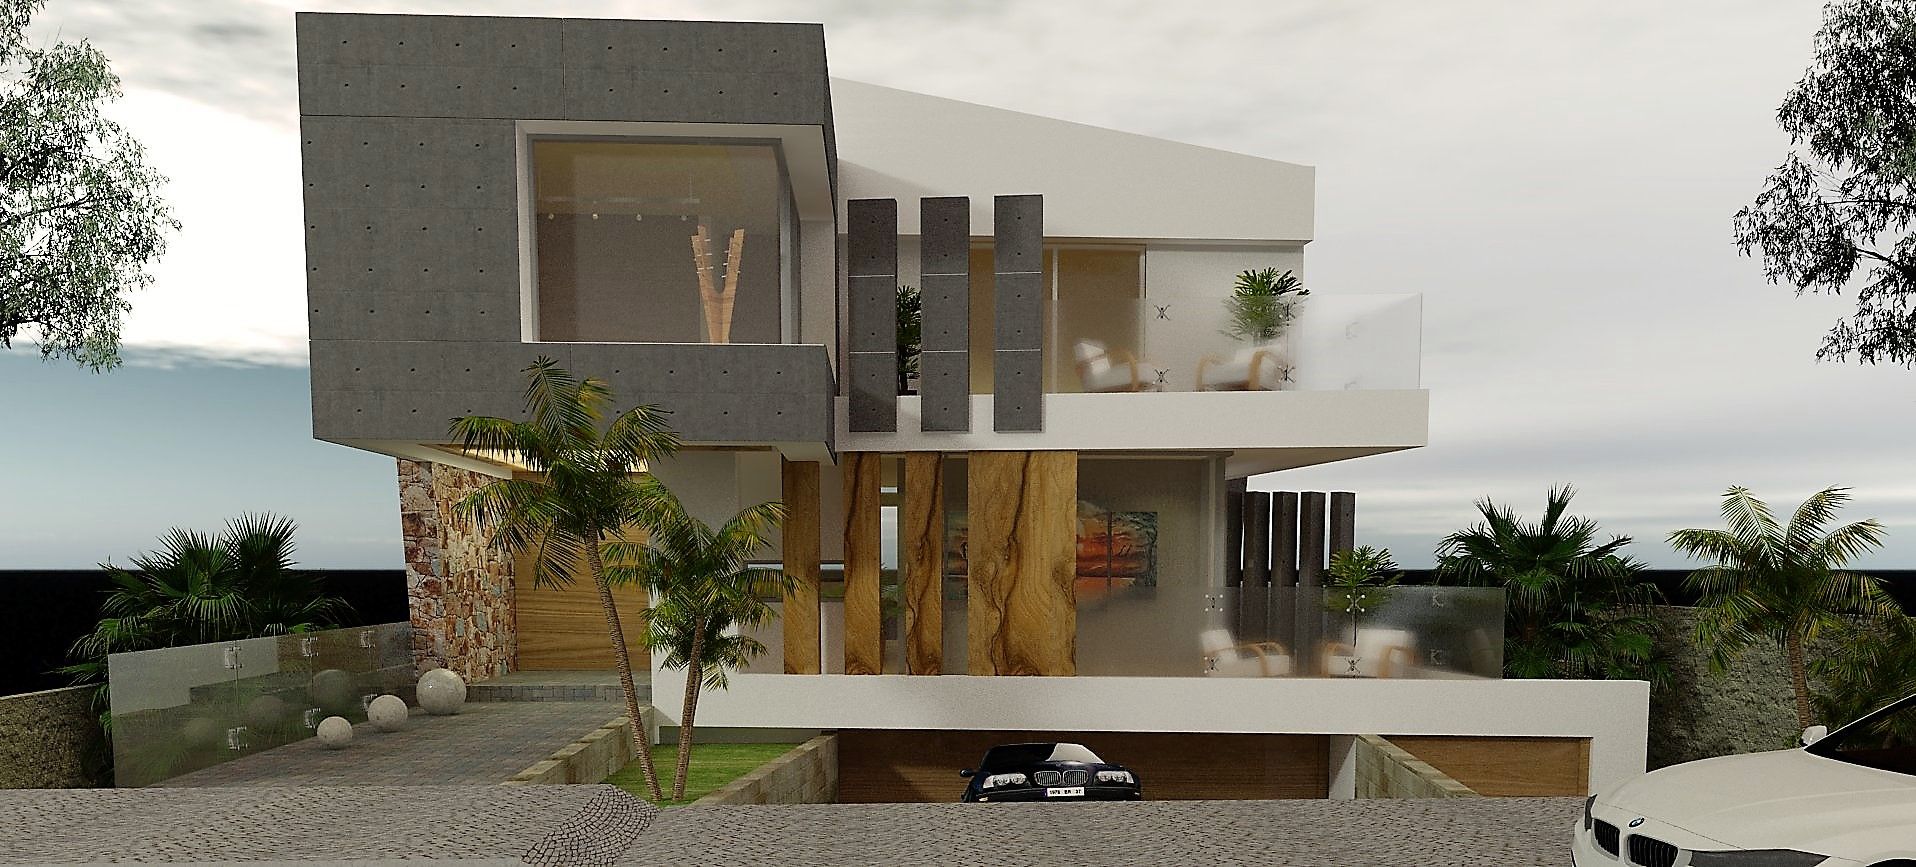 Estudio de Texturas - Visualización de proyecto CASTELLINO ARQUITECTOS (+) Casas modernas: Ideas, diseños y decoración Concreto